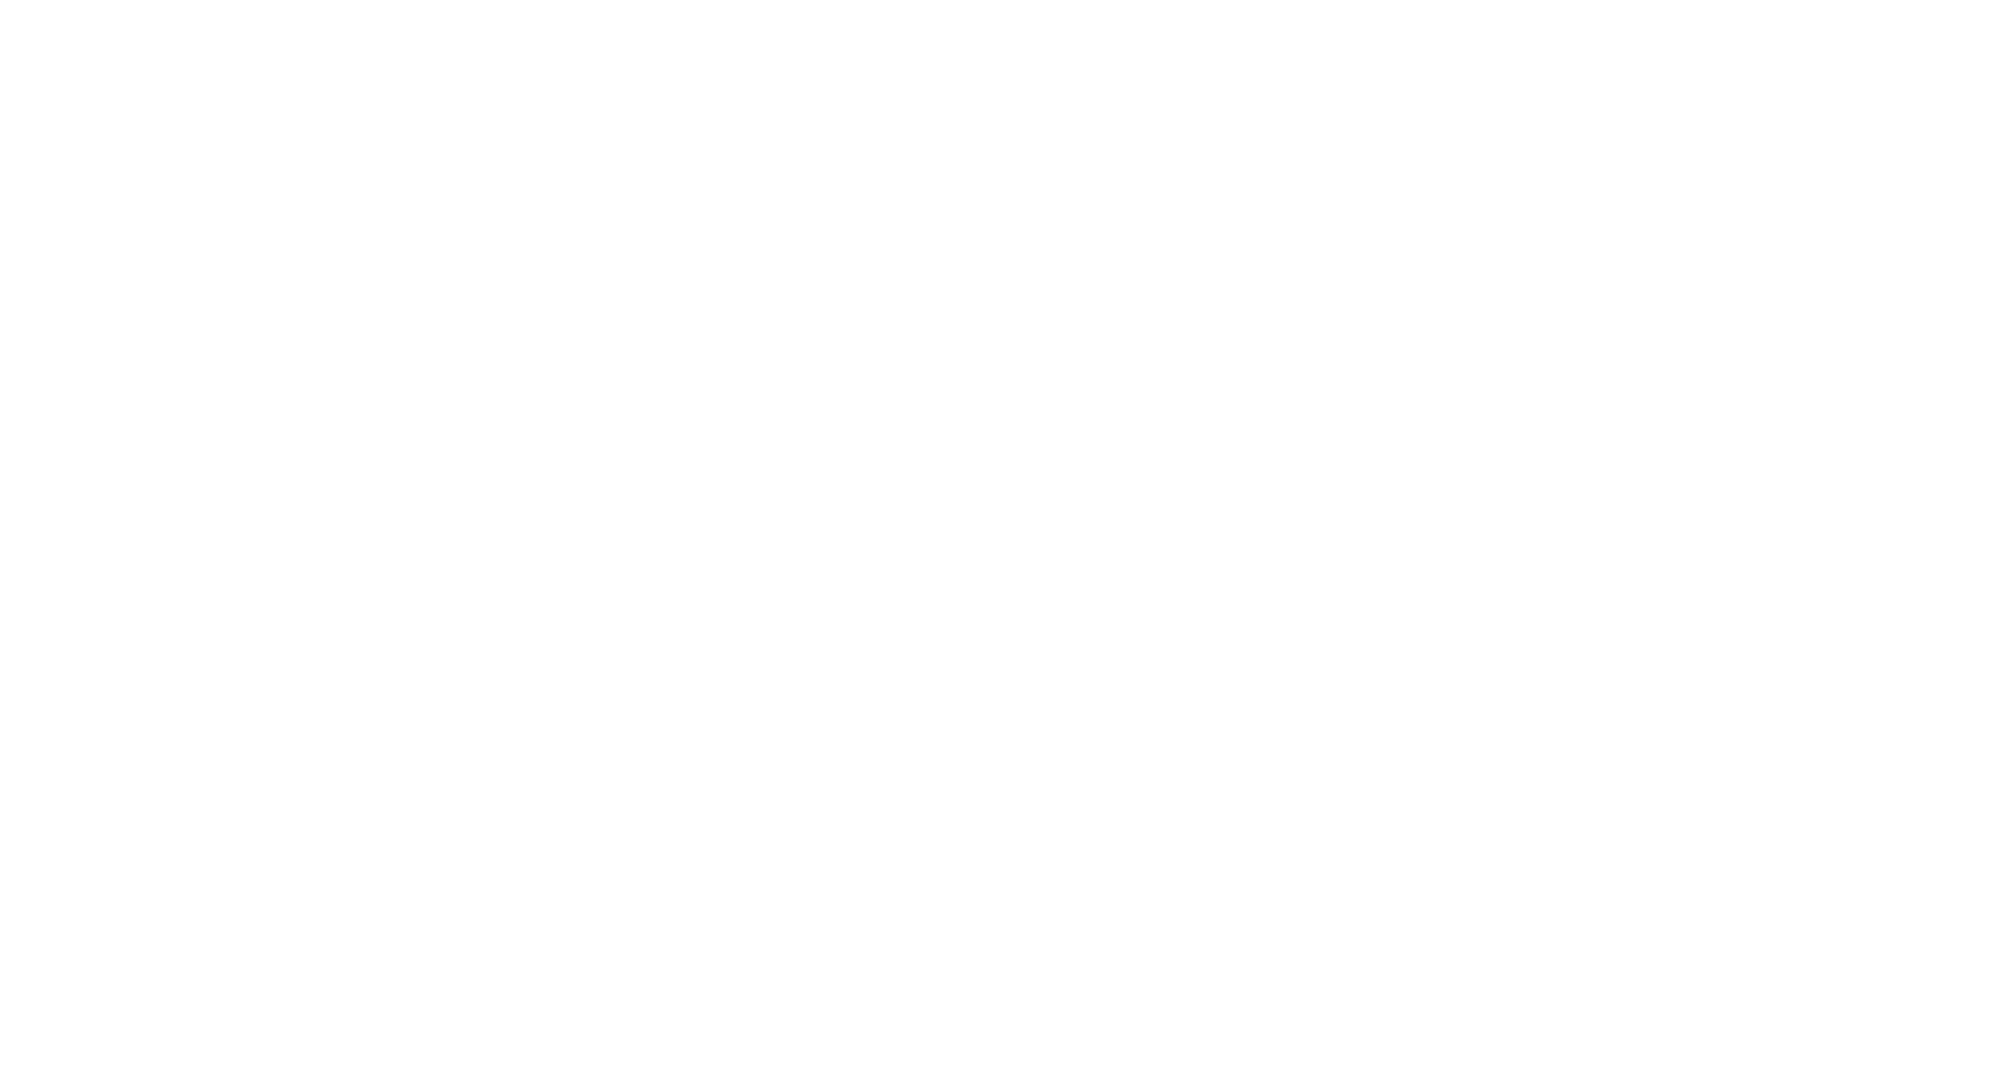 Berenberg